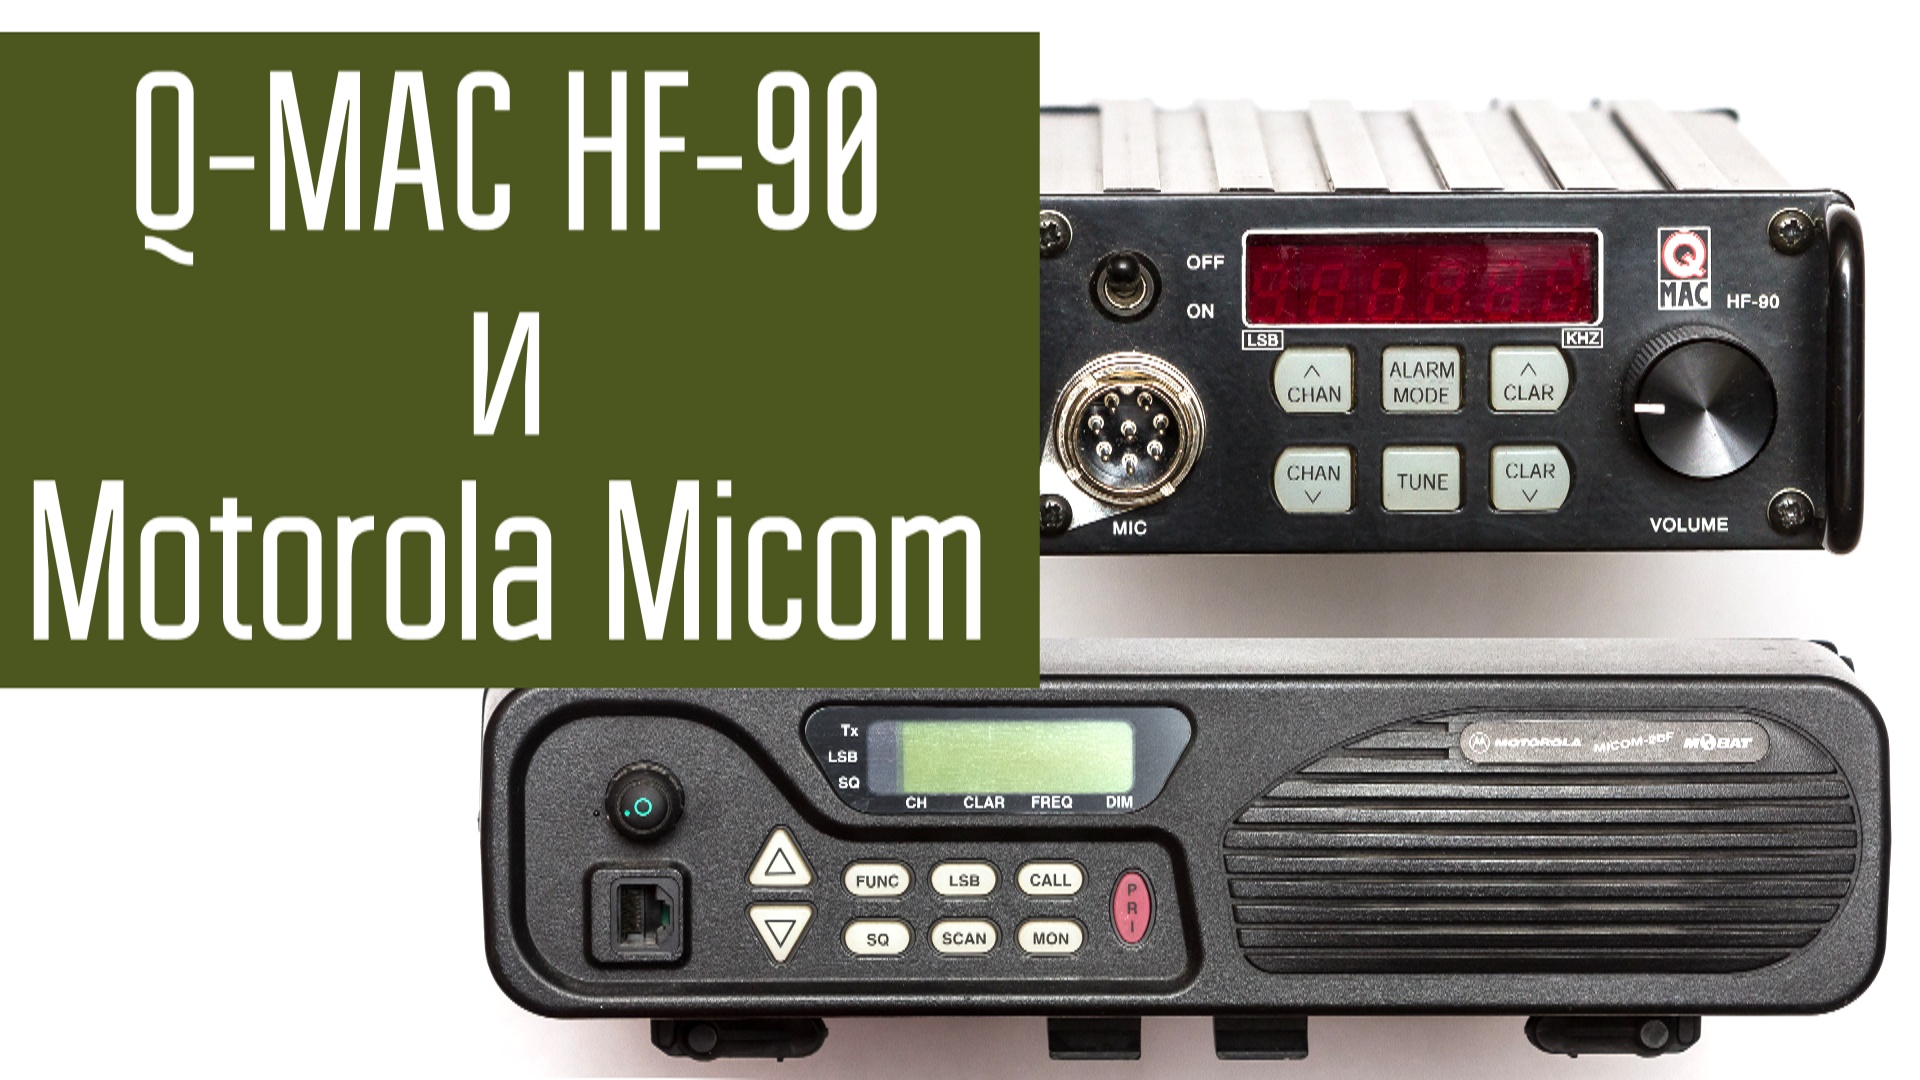 Motorola Micom 2BF и Q-MAC HF-90. Сравнение радиостанций в полях. Радиосвязь. Короткие волны.